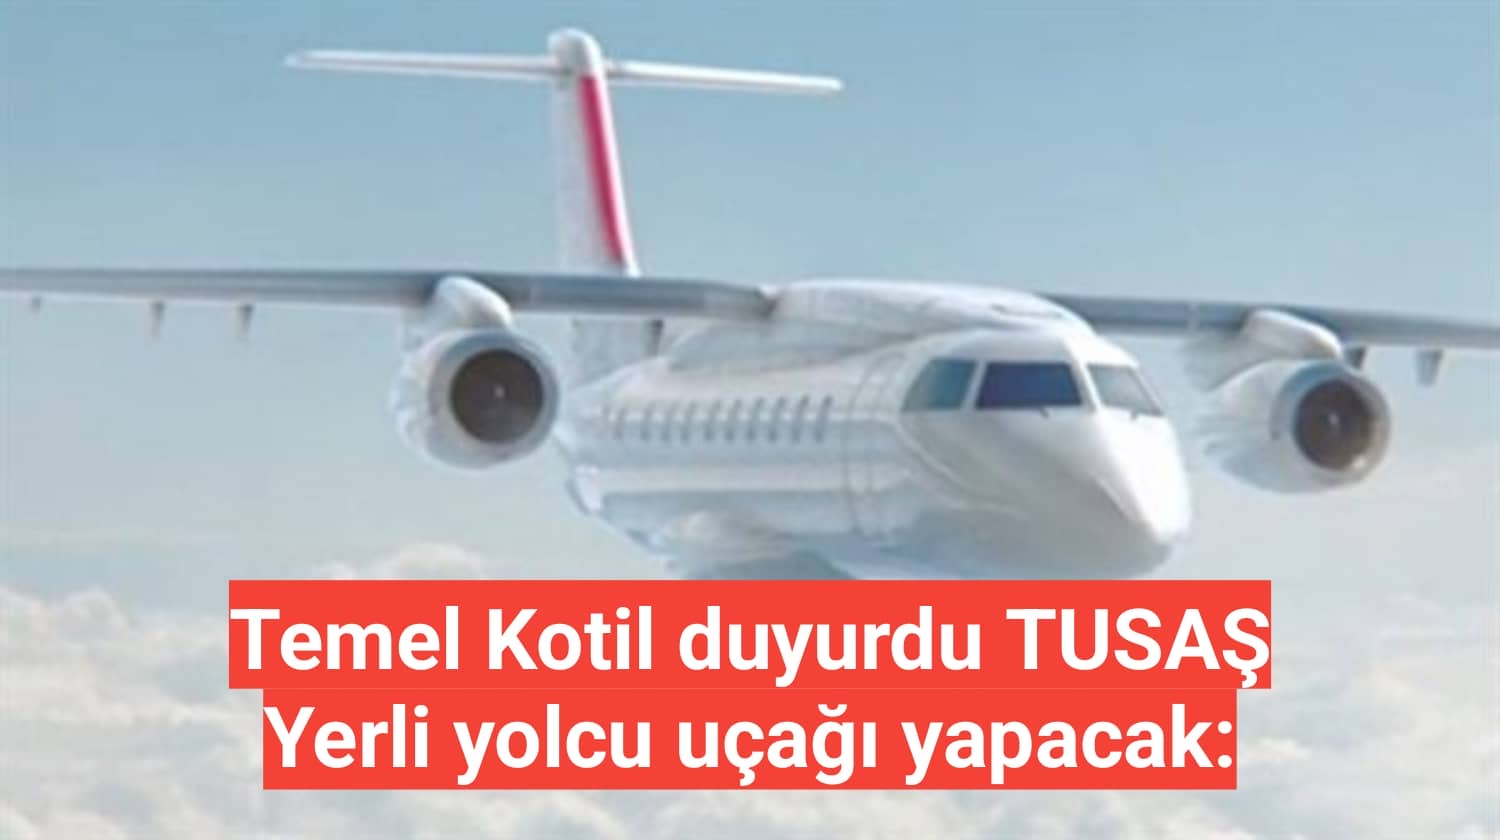 Temel Kotil duyurdu TUSAŞ Yerli yolcu uçağı yapacak: